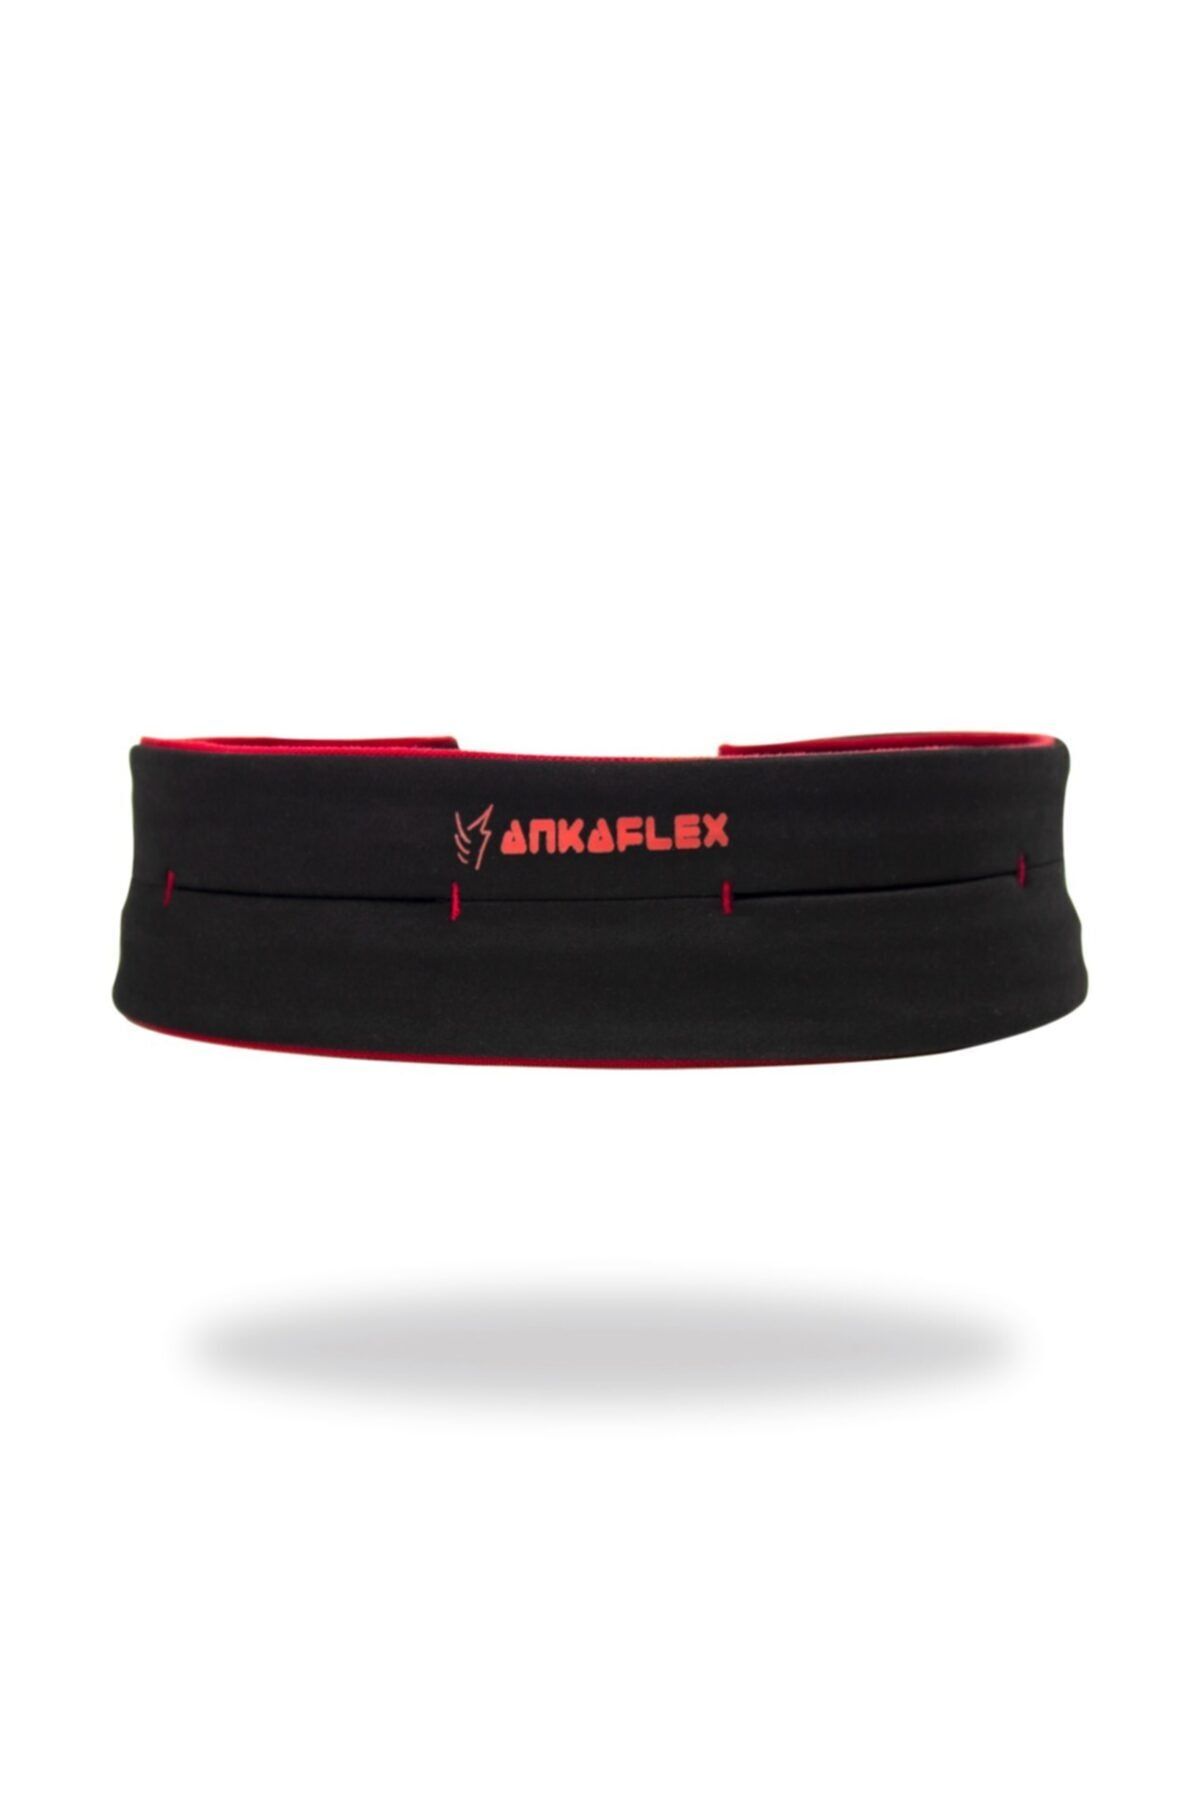 Ankaflex Unisex Kırmızı Spor Çantası